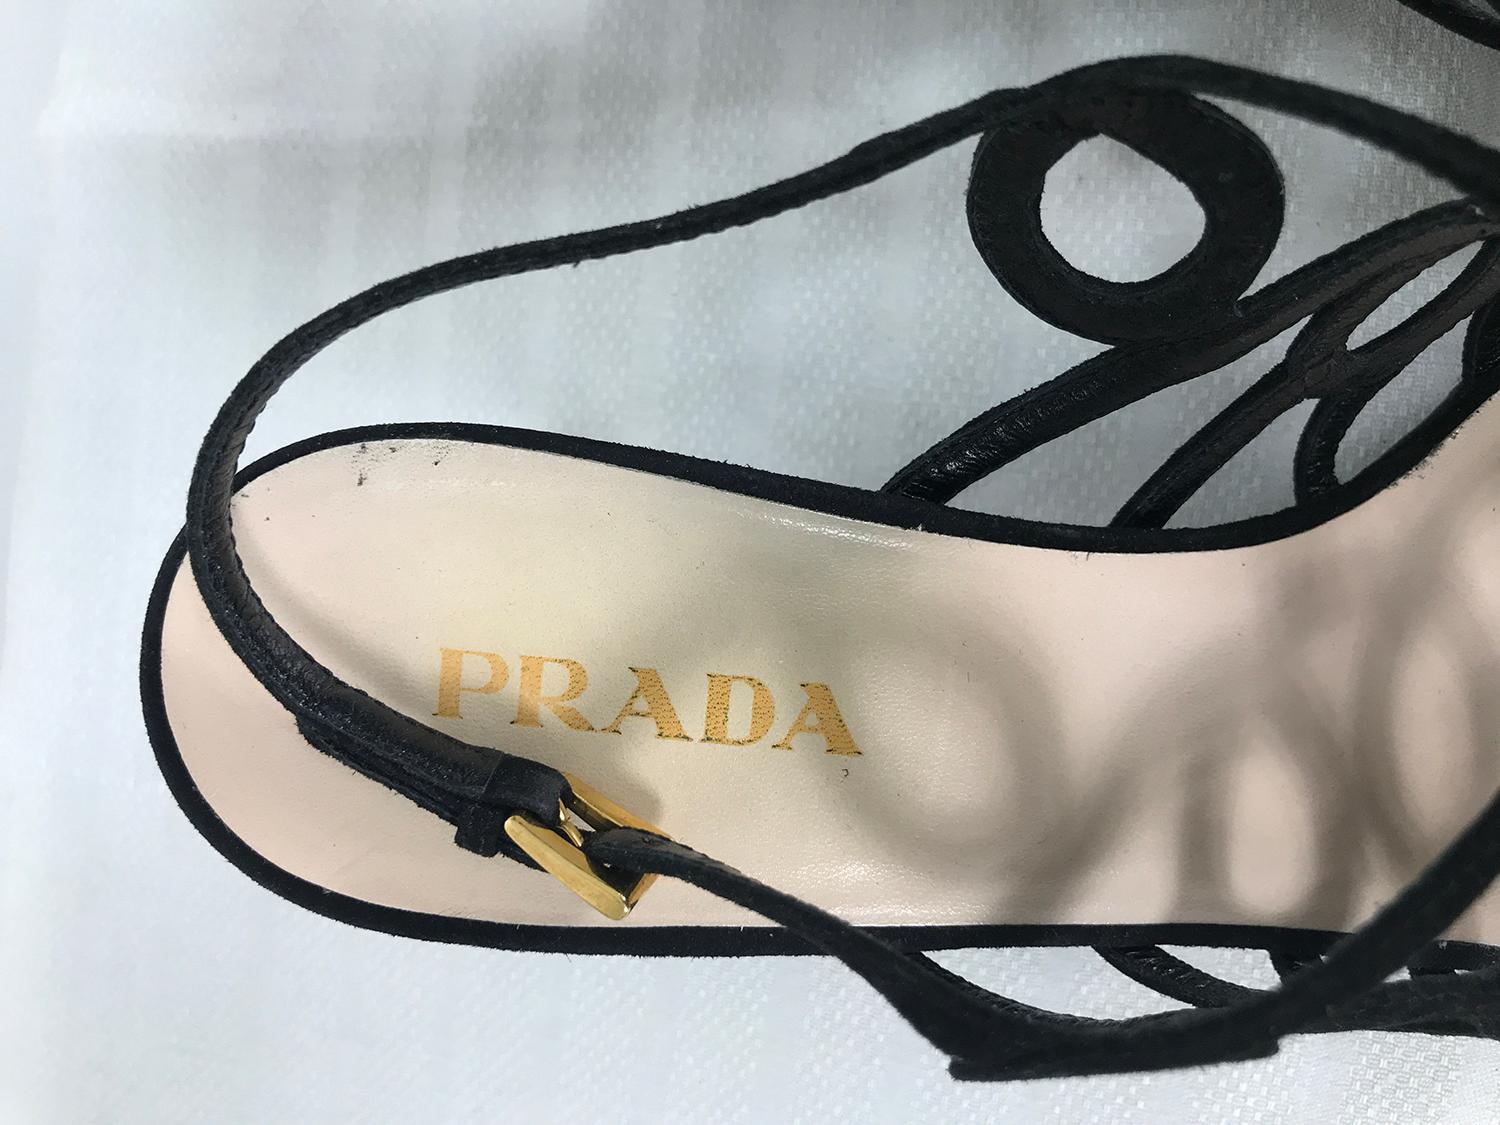 Prada Black Suede Loop High Heel Sandals 38 1/2 1